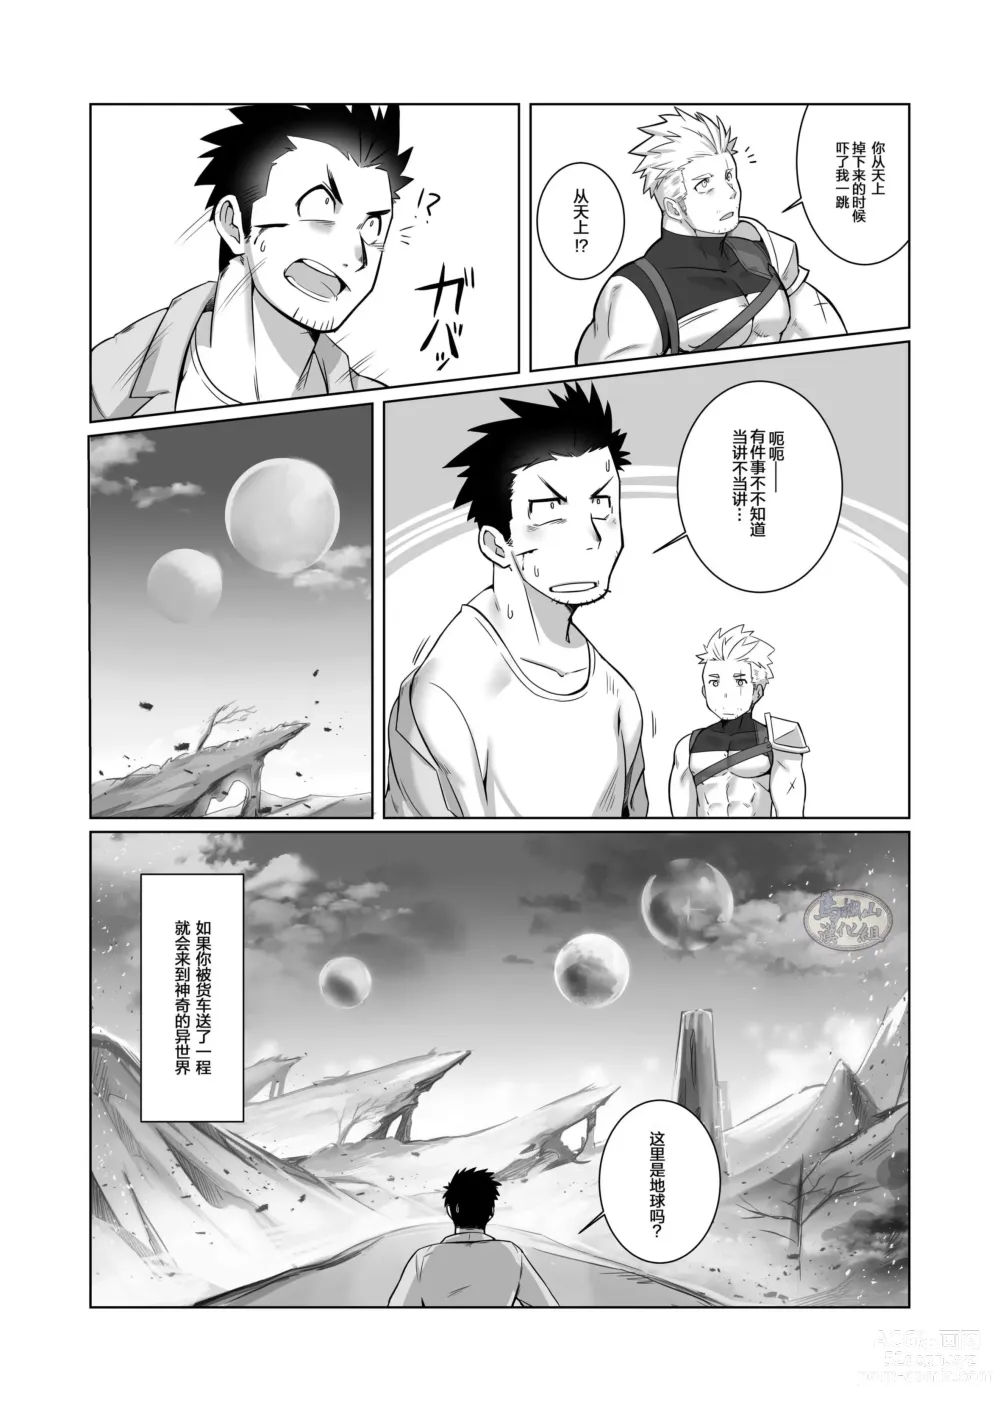 Page 6 of doujinshi 关于我在转生之后身边全是肌肉男的奇闻轶事